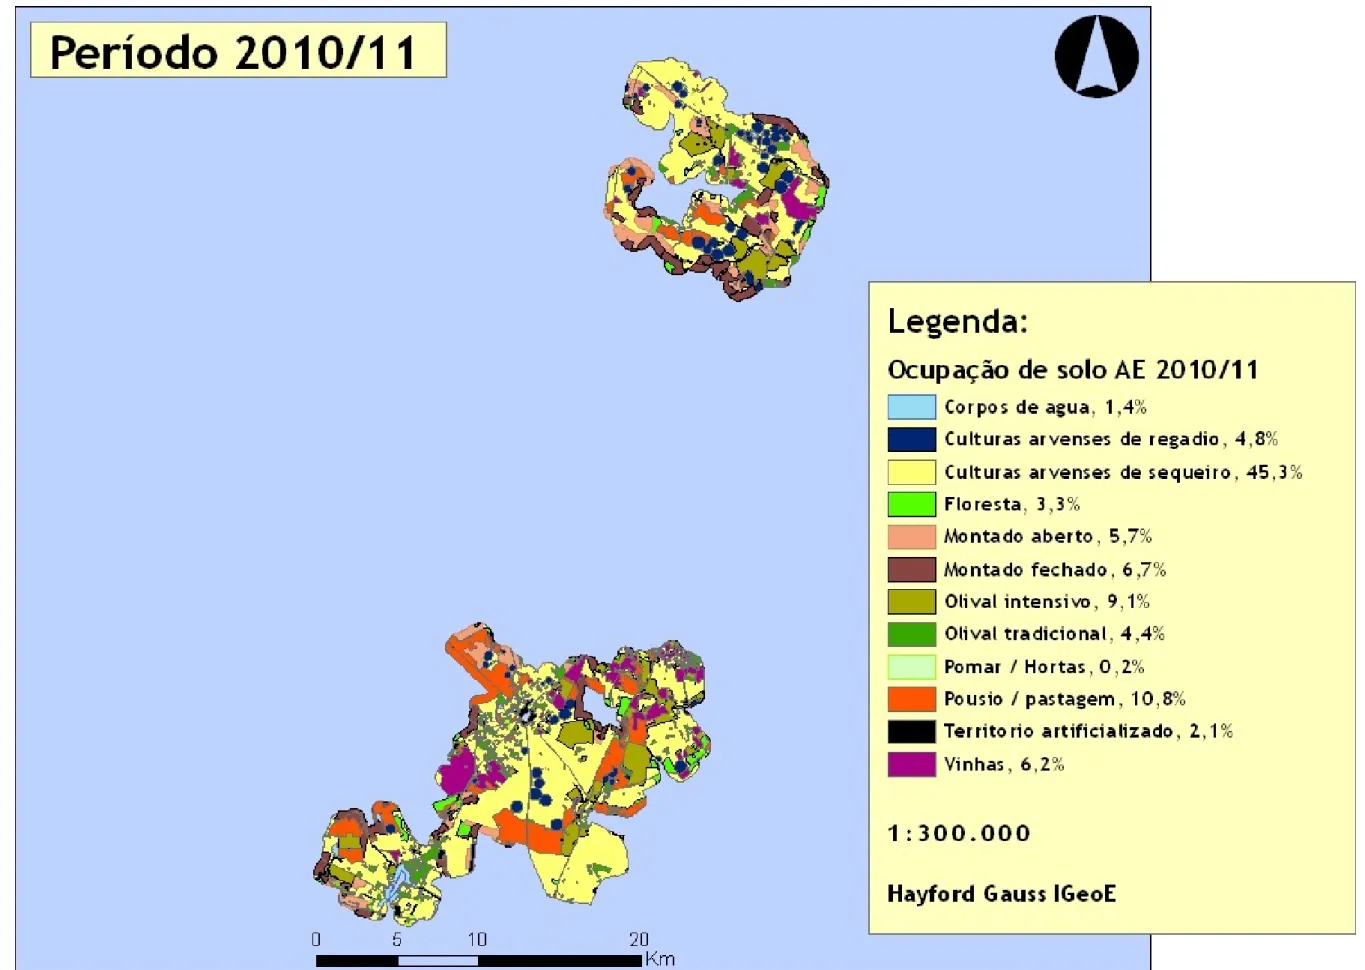 Figura 4 – Carta da ocupação de solo da área de estudo para o período 2010/11 com classes e percentagens de uso do solo